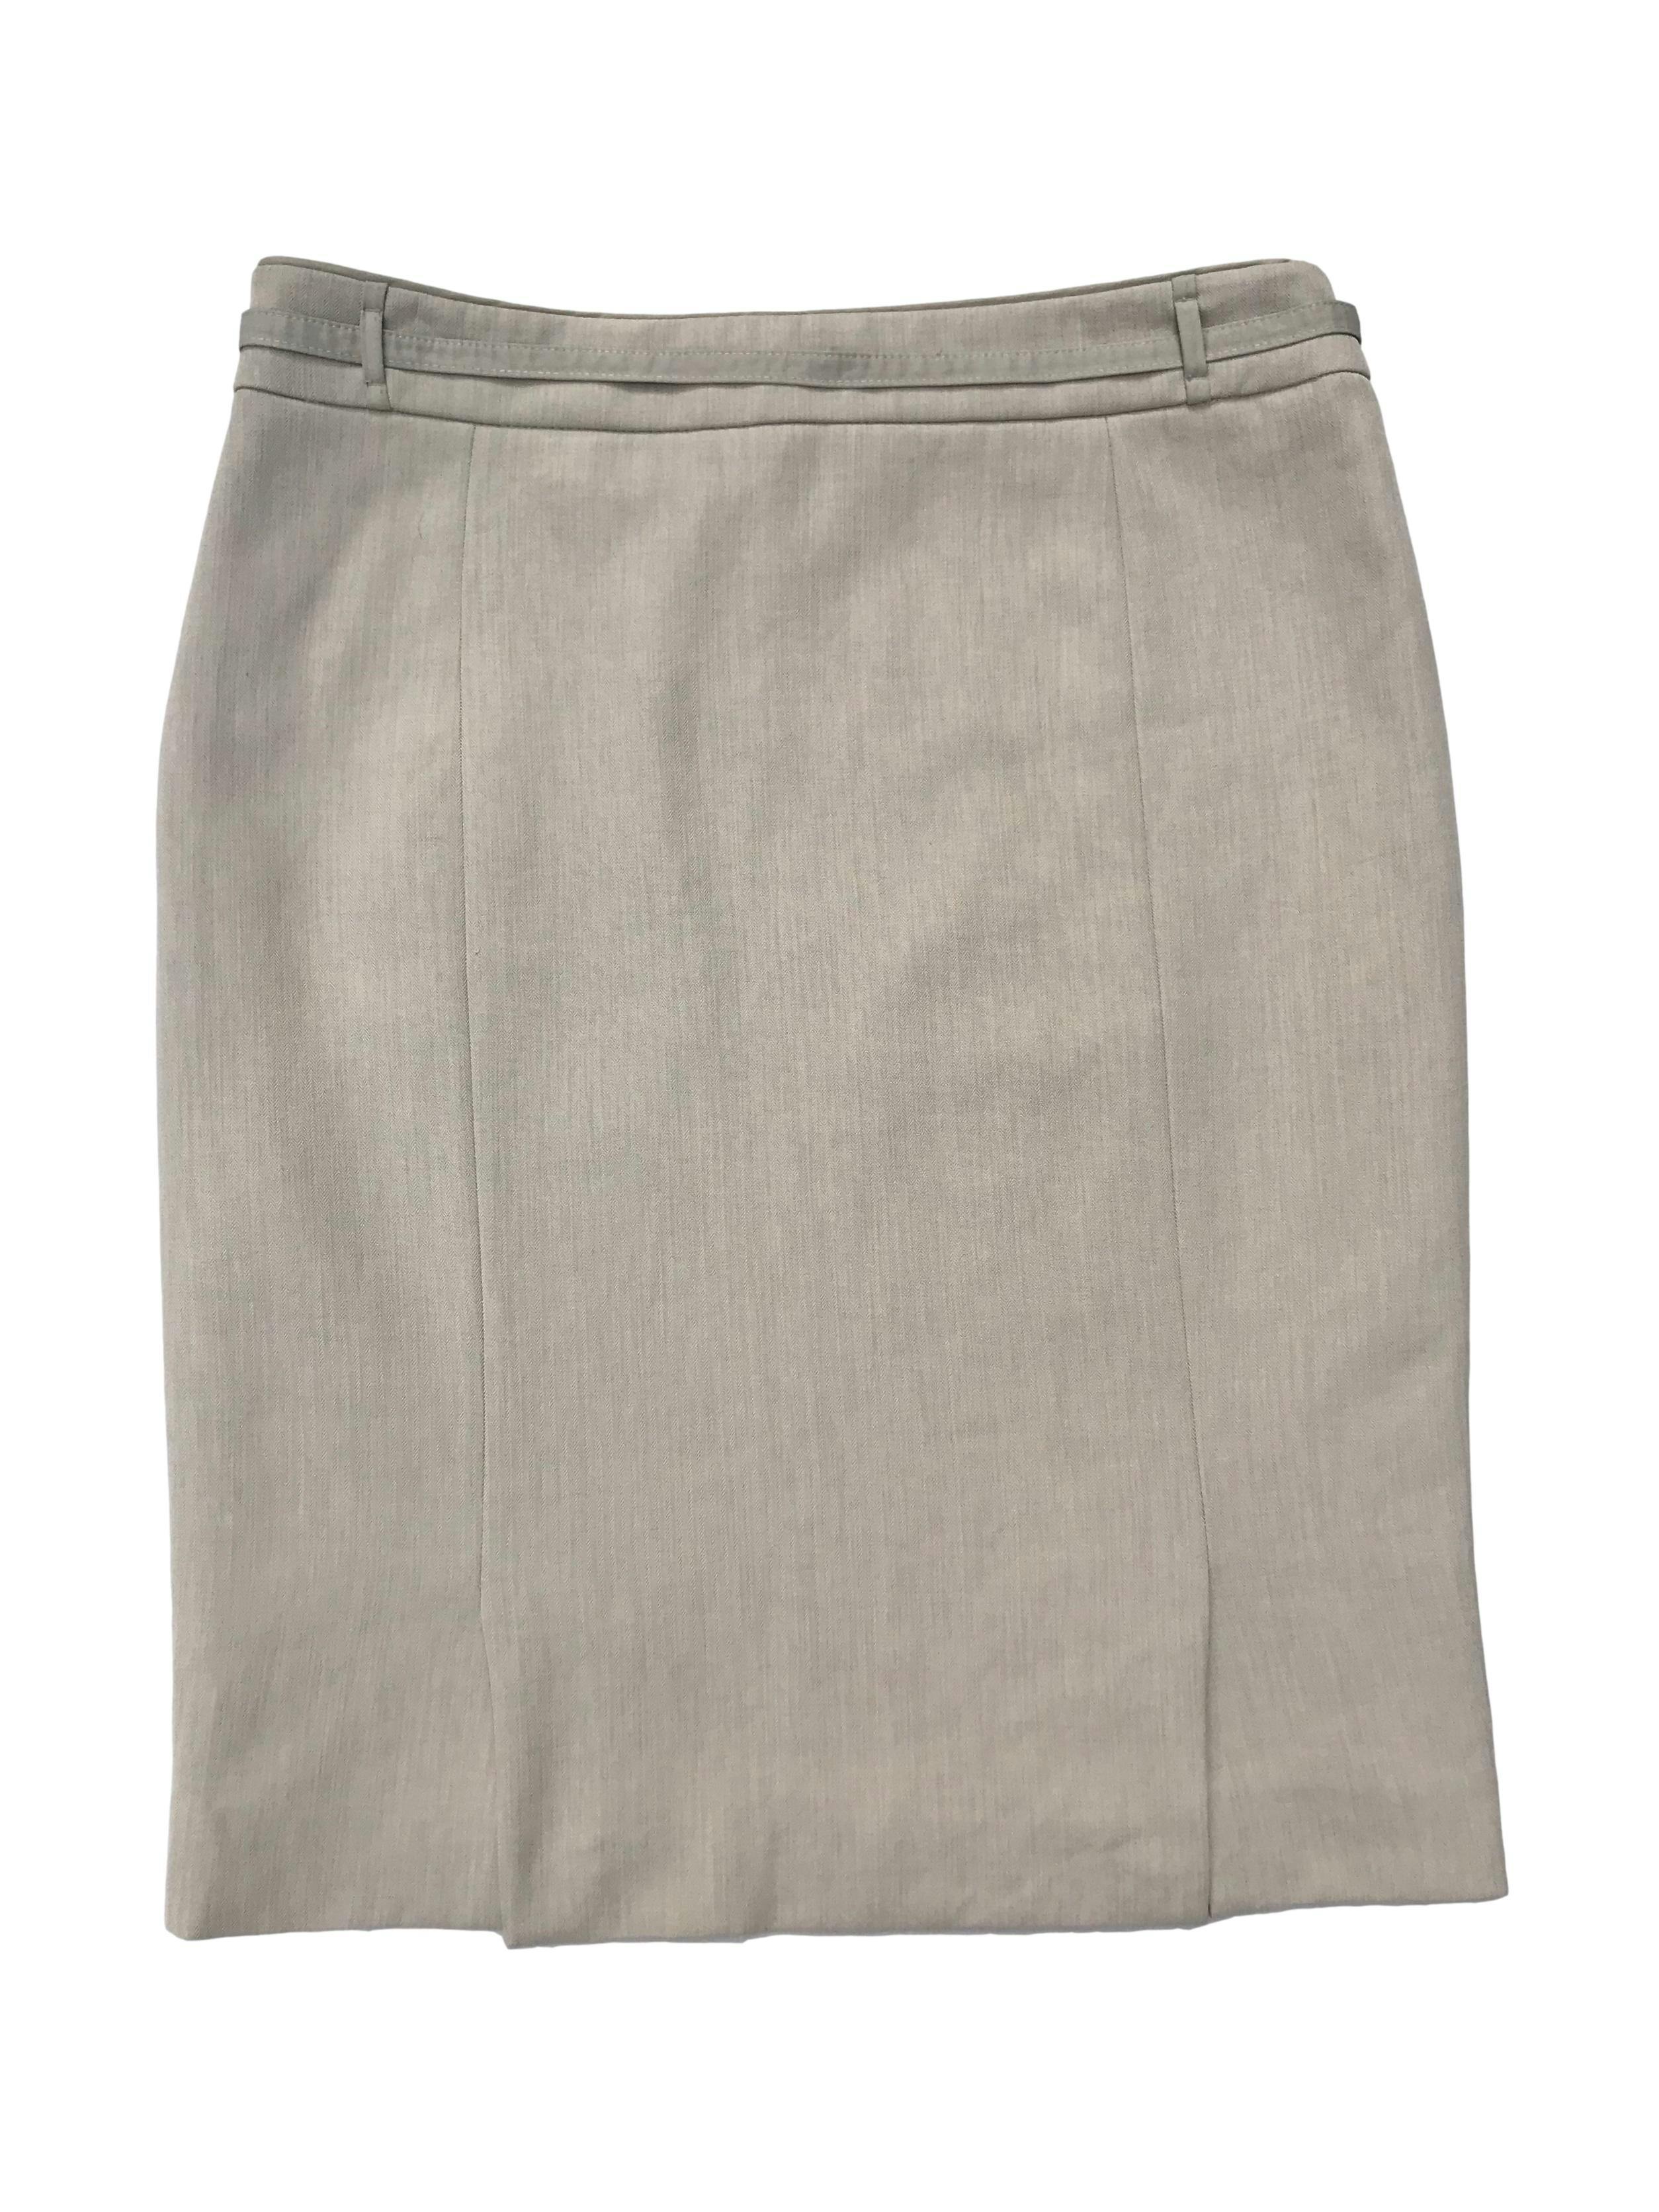 Falda formal Mango en tono crema, forrada, con cierre lateral y correita. Cintura 78cm Cadera 96cm Largo 55cm